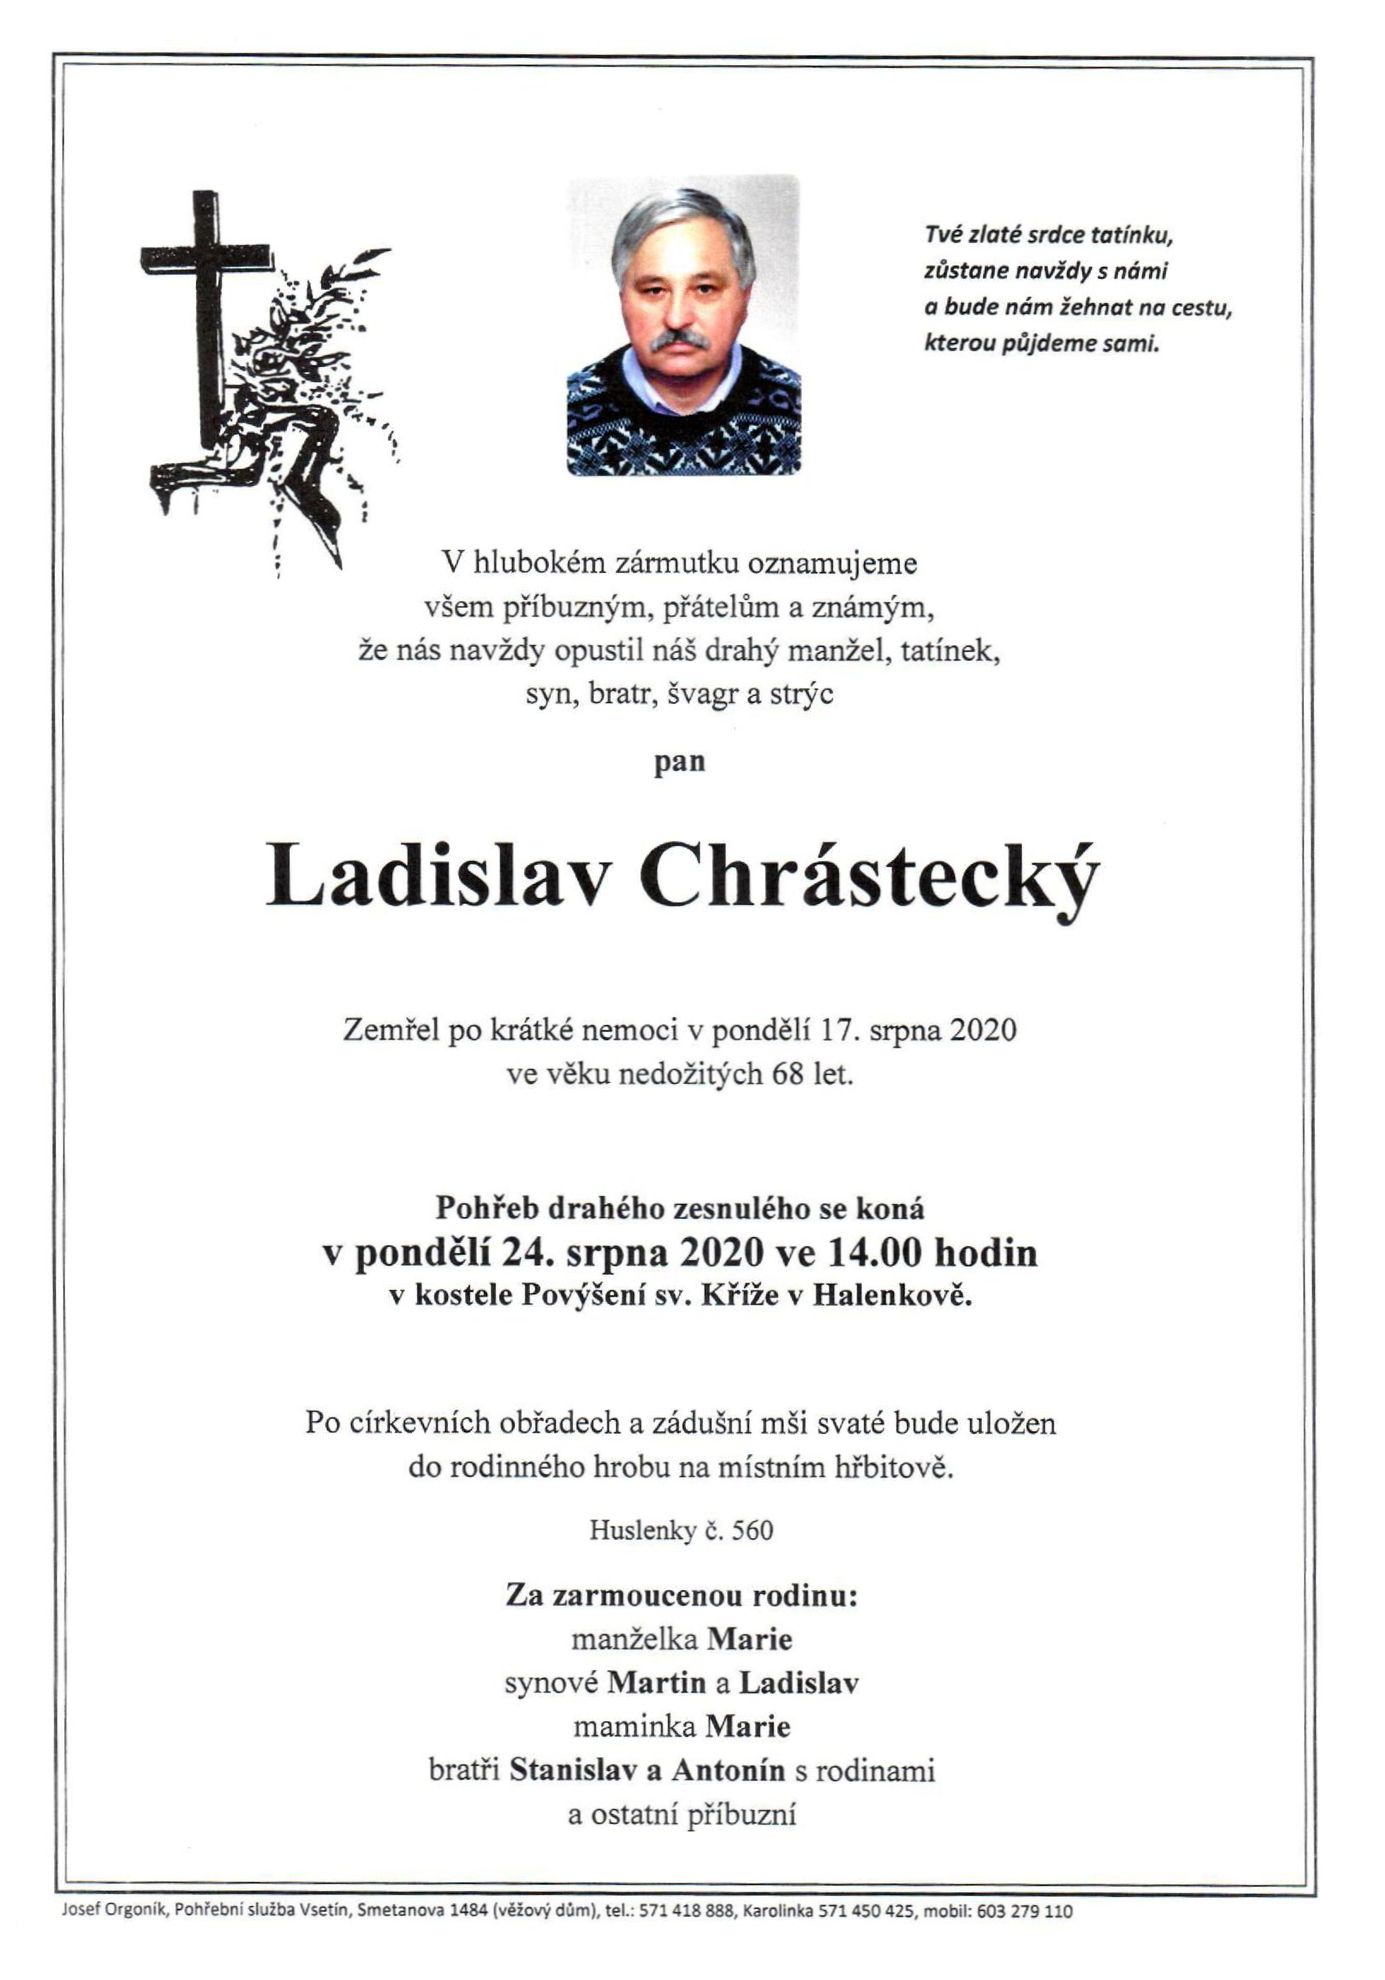 Ladislav Chrástecký